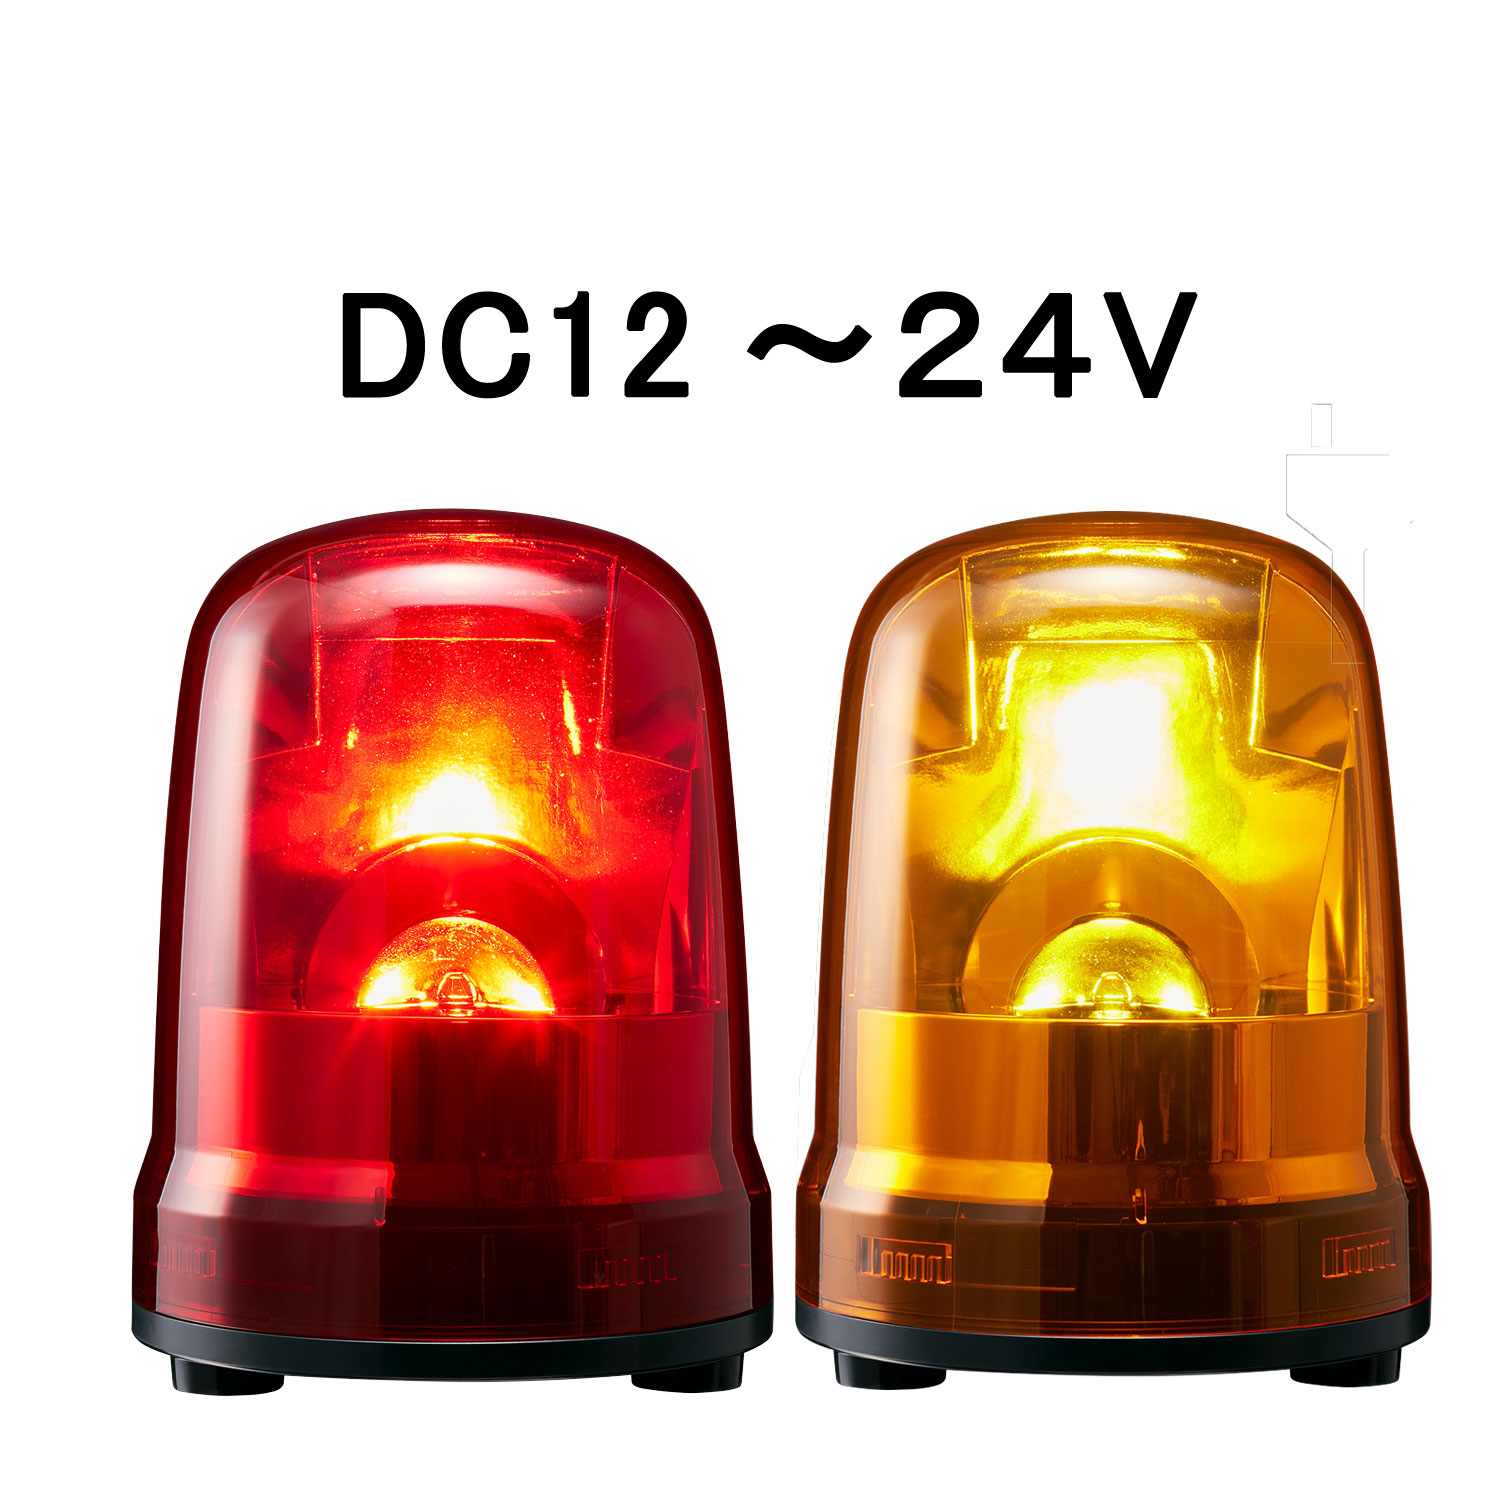 注目の パトライト Skp M1j R 大型led回転灯 赤 Dc12 24v エッセンシャルズ Sportunia Com